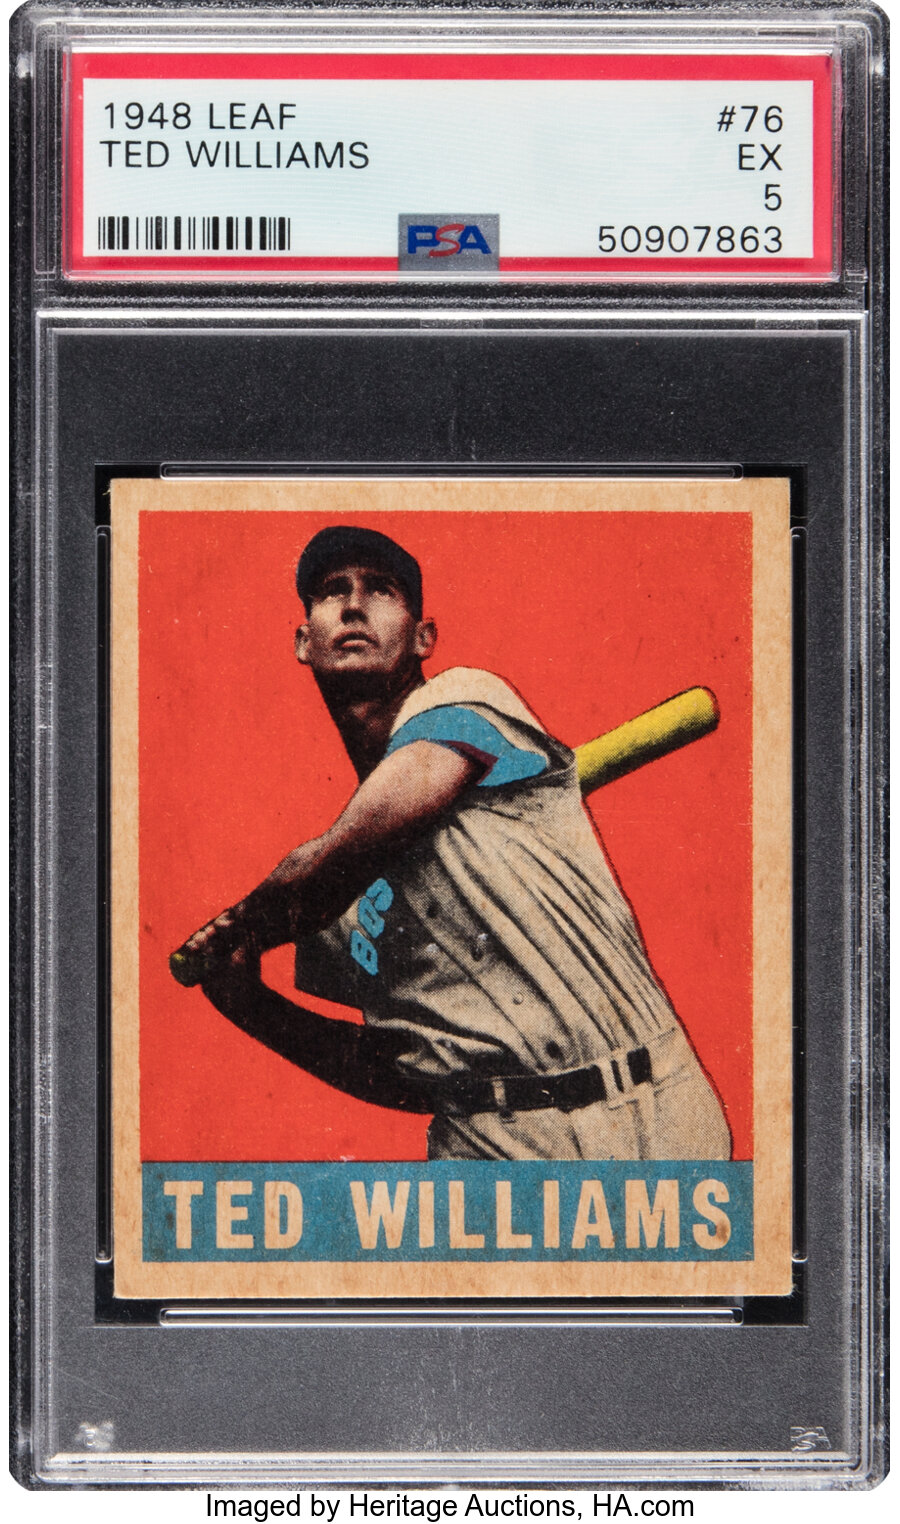 1948 Leaf Ted Williams #76 PSA EX 5